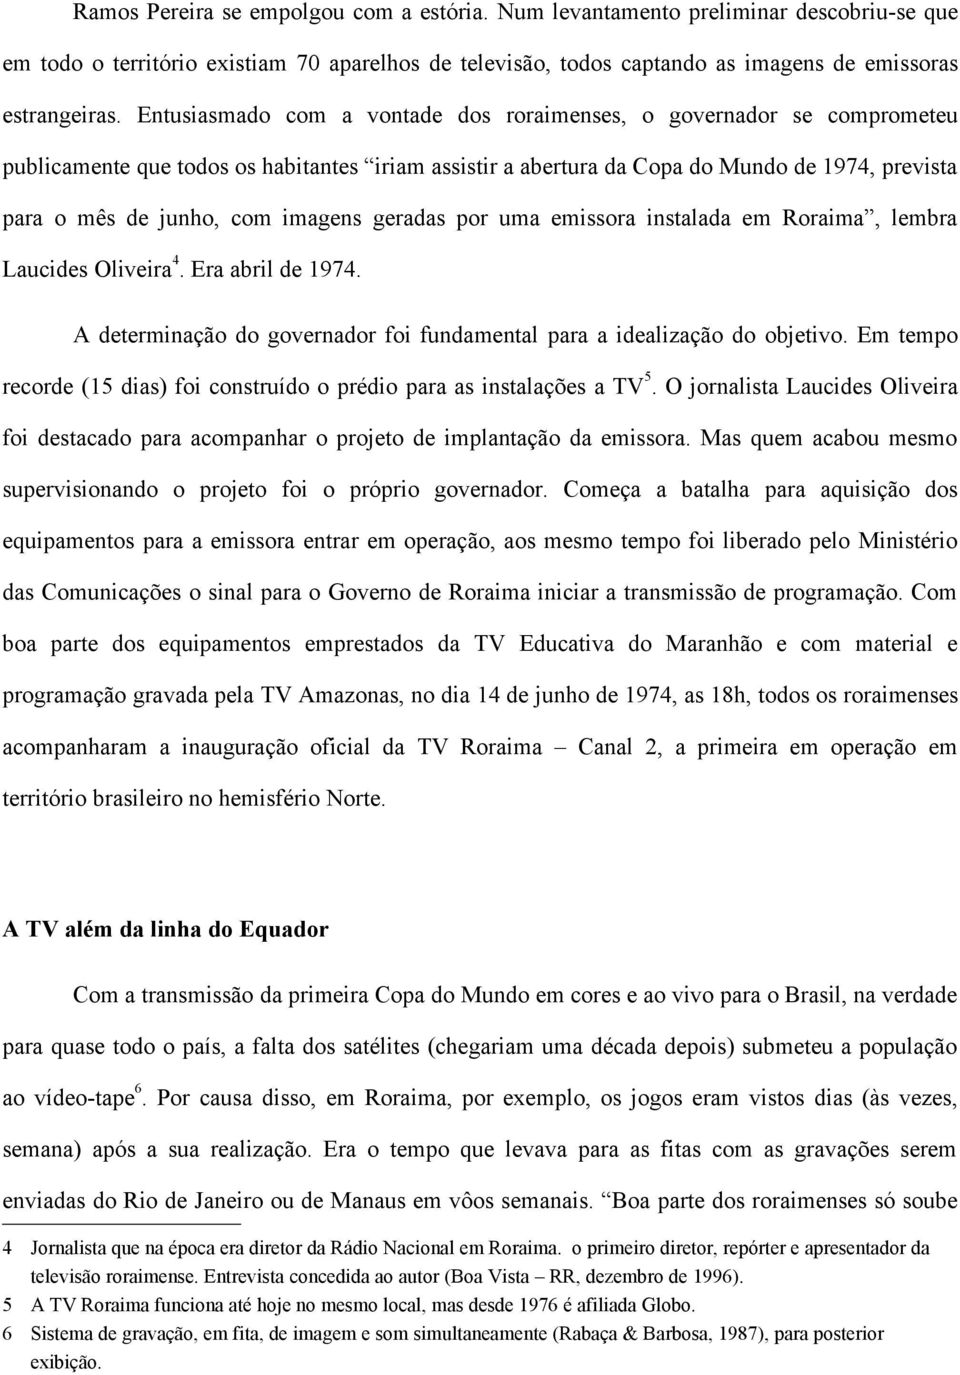 imagens geradas por uma emissora instalada em Roraima, lembra Laucides Oliveira 4. Era abril de 1974. A determinação do governador foi fundamental para a idealização do objetivo.